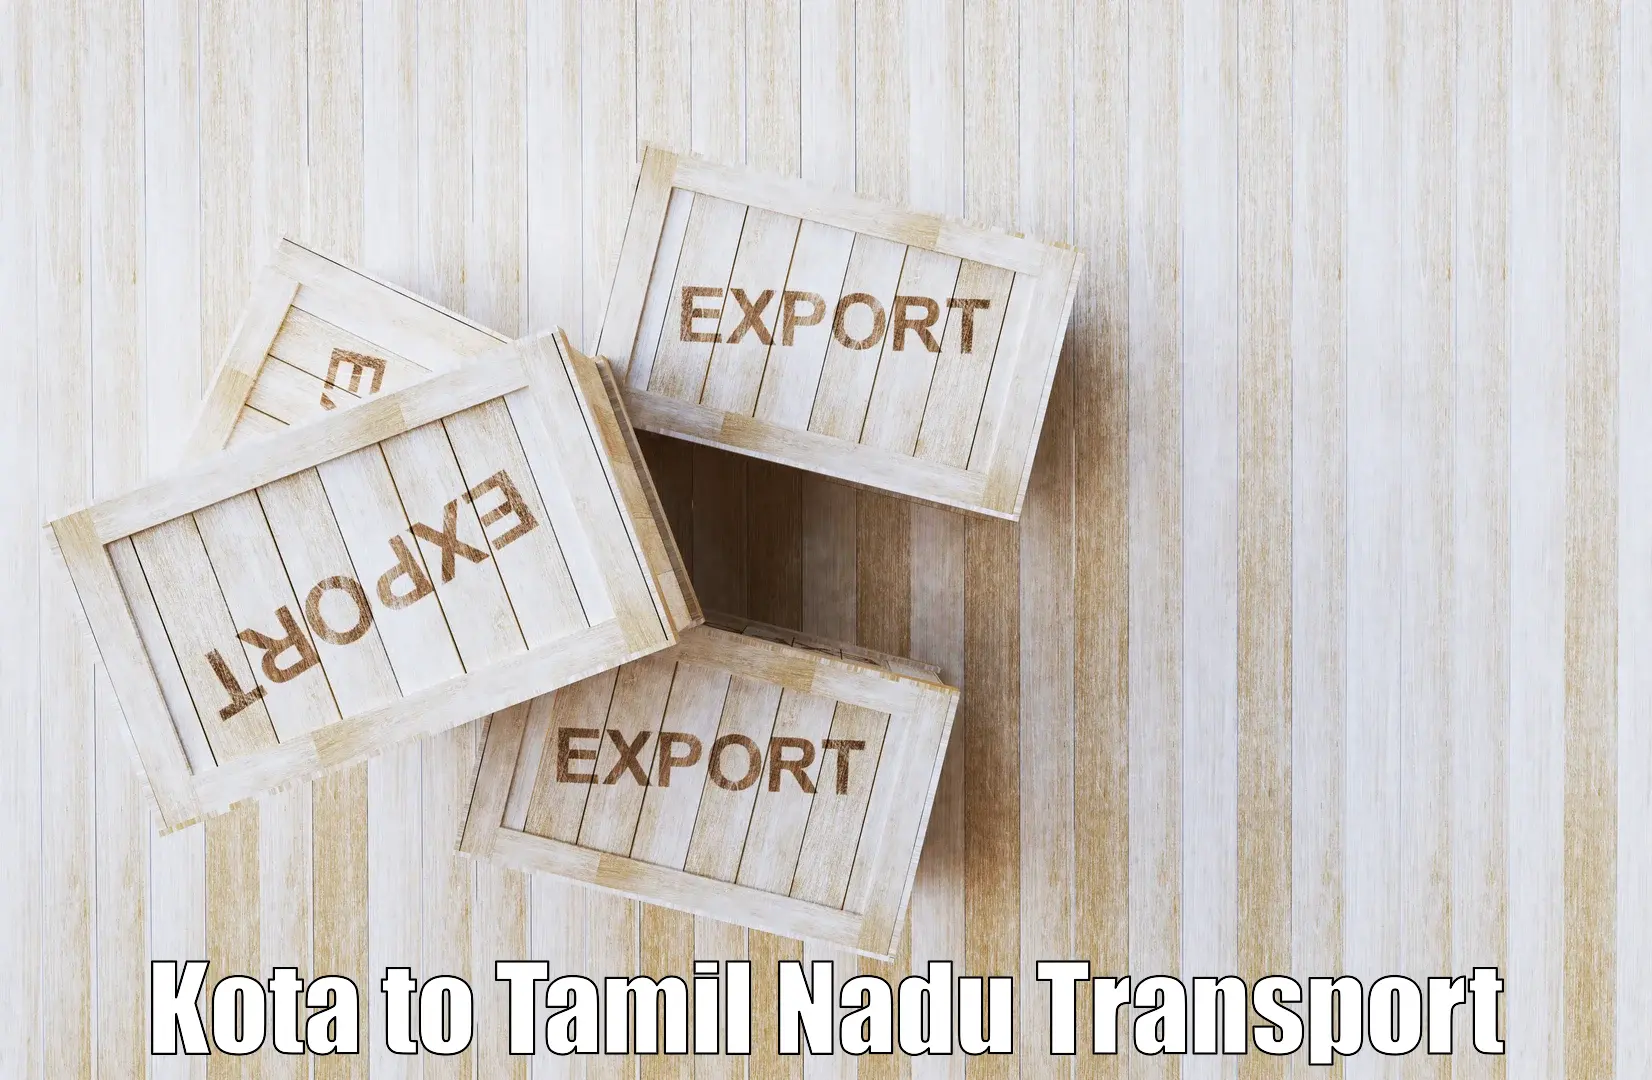 Shipping services Kota to Tiruvannamalai